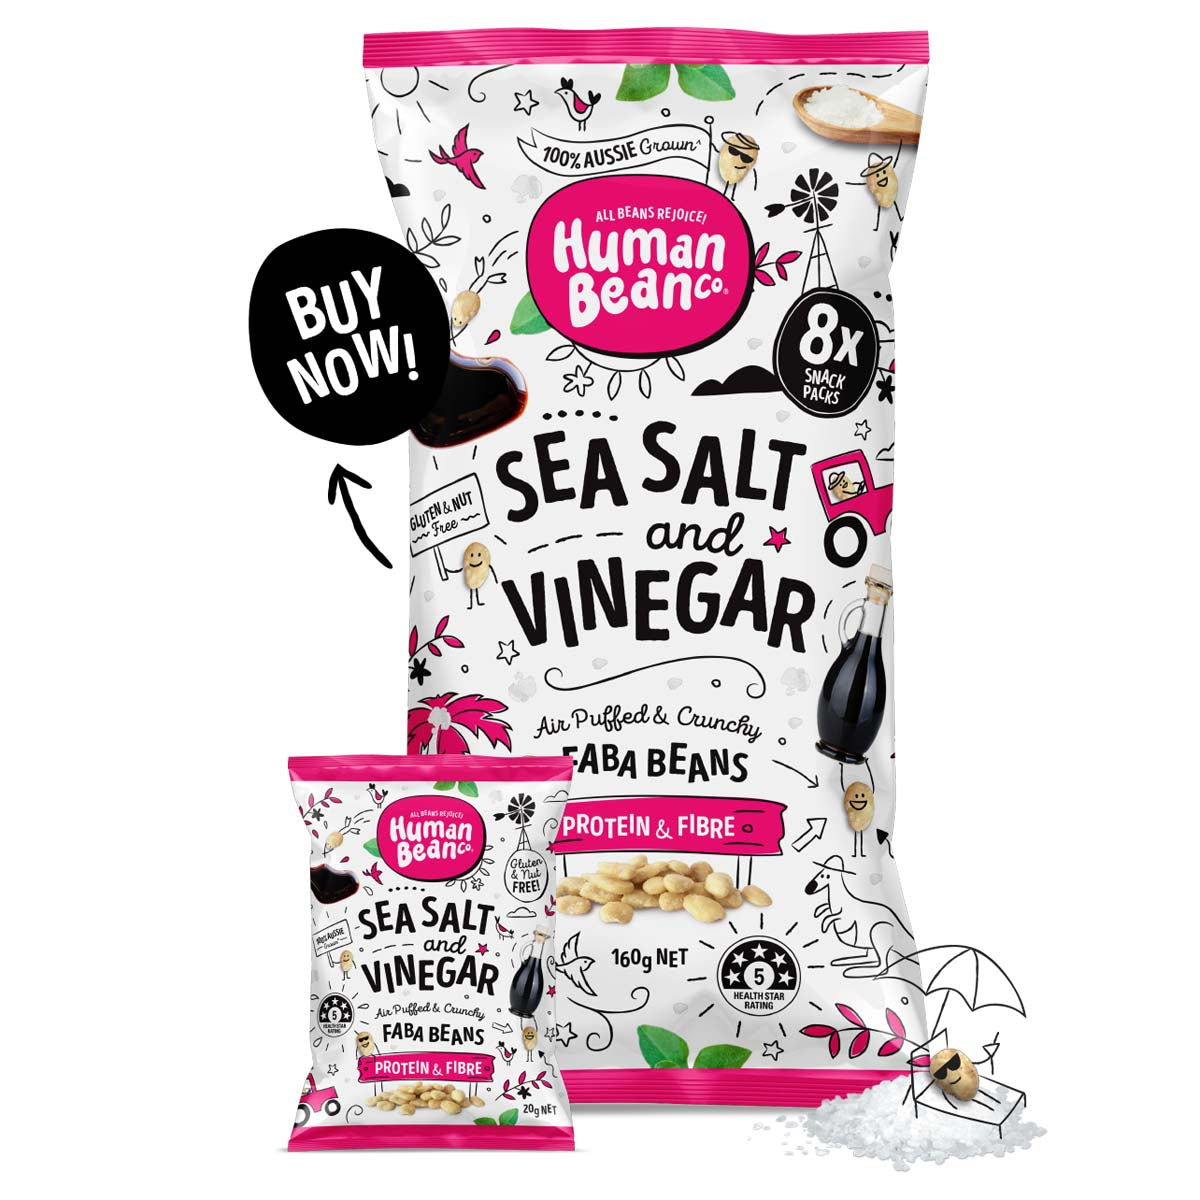 MAMA730 Human Bean Co 海鹽混合醋味蠶豆 (8 x 20g) Multipack Human Bean Co Sea Salt & Vinegar Faba Beans (8 x 20g) Multipack